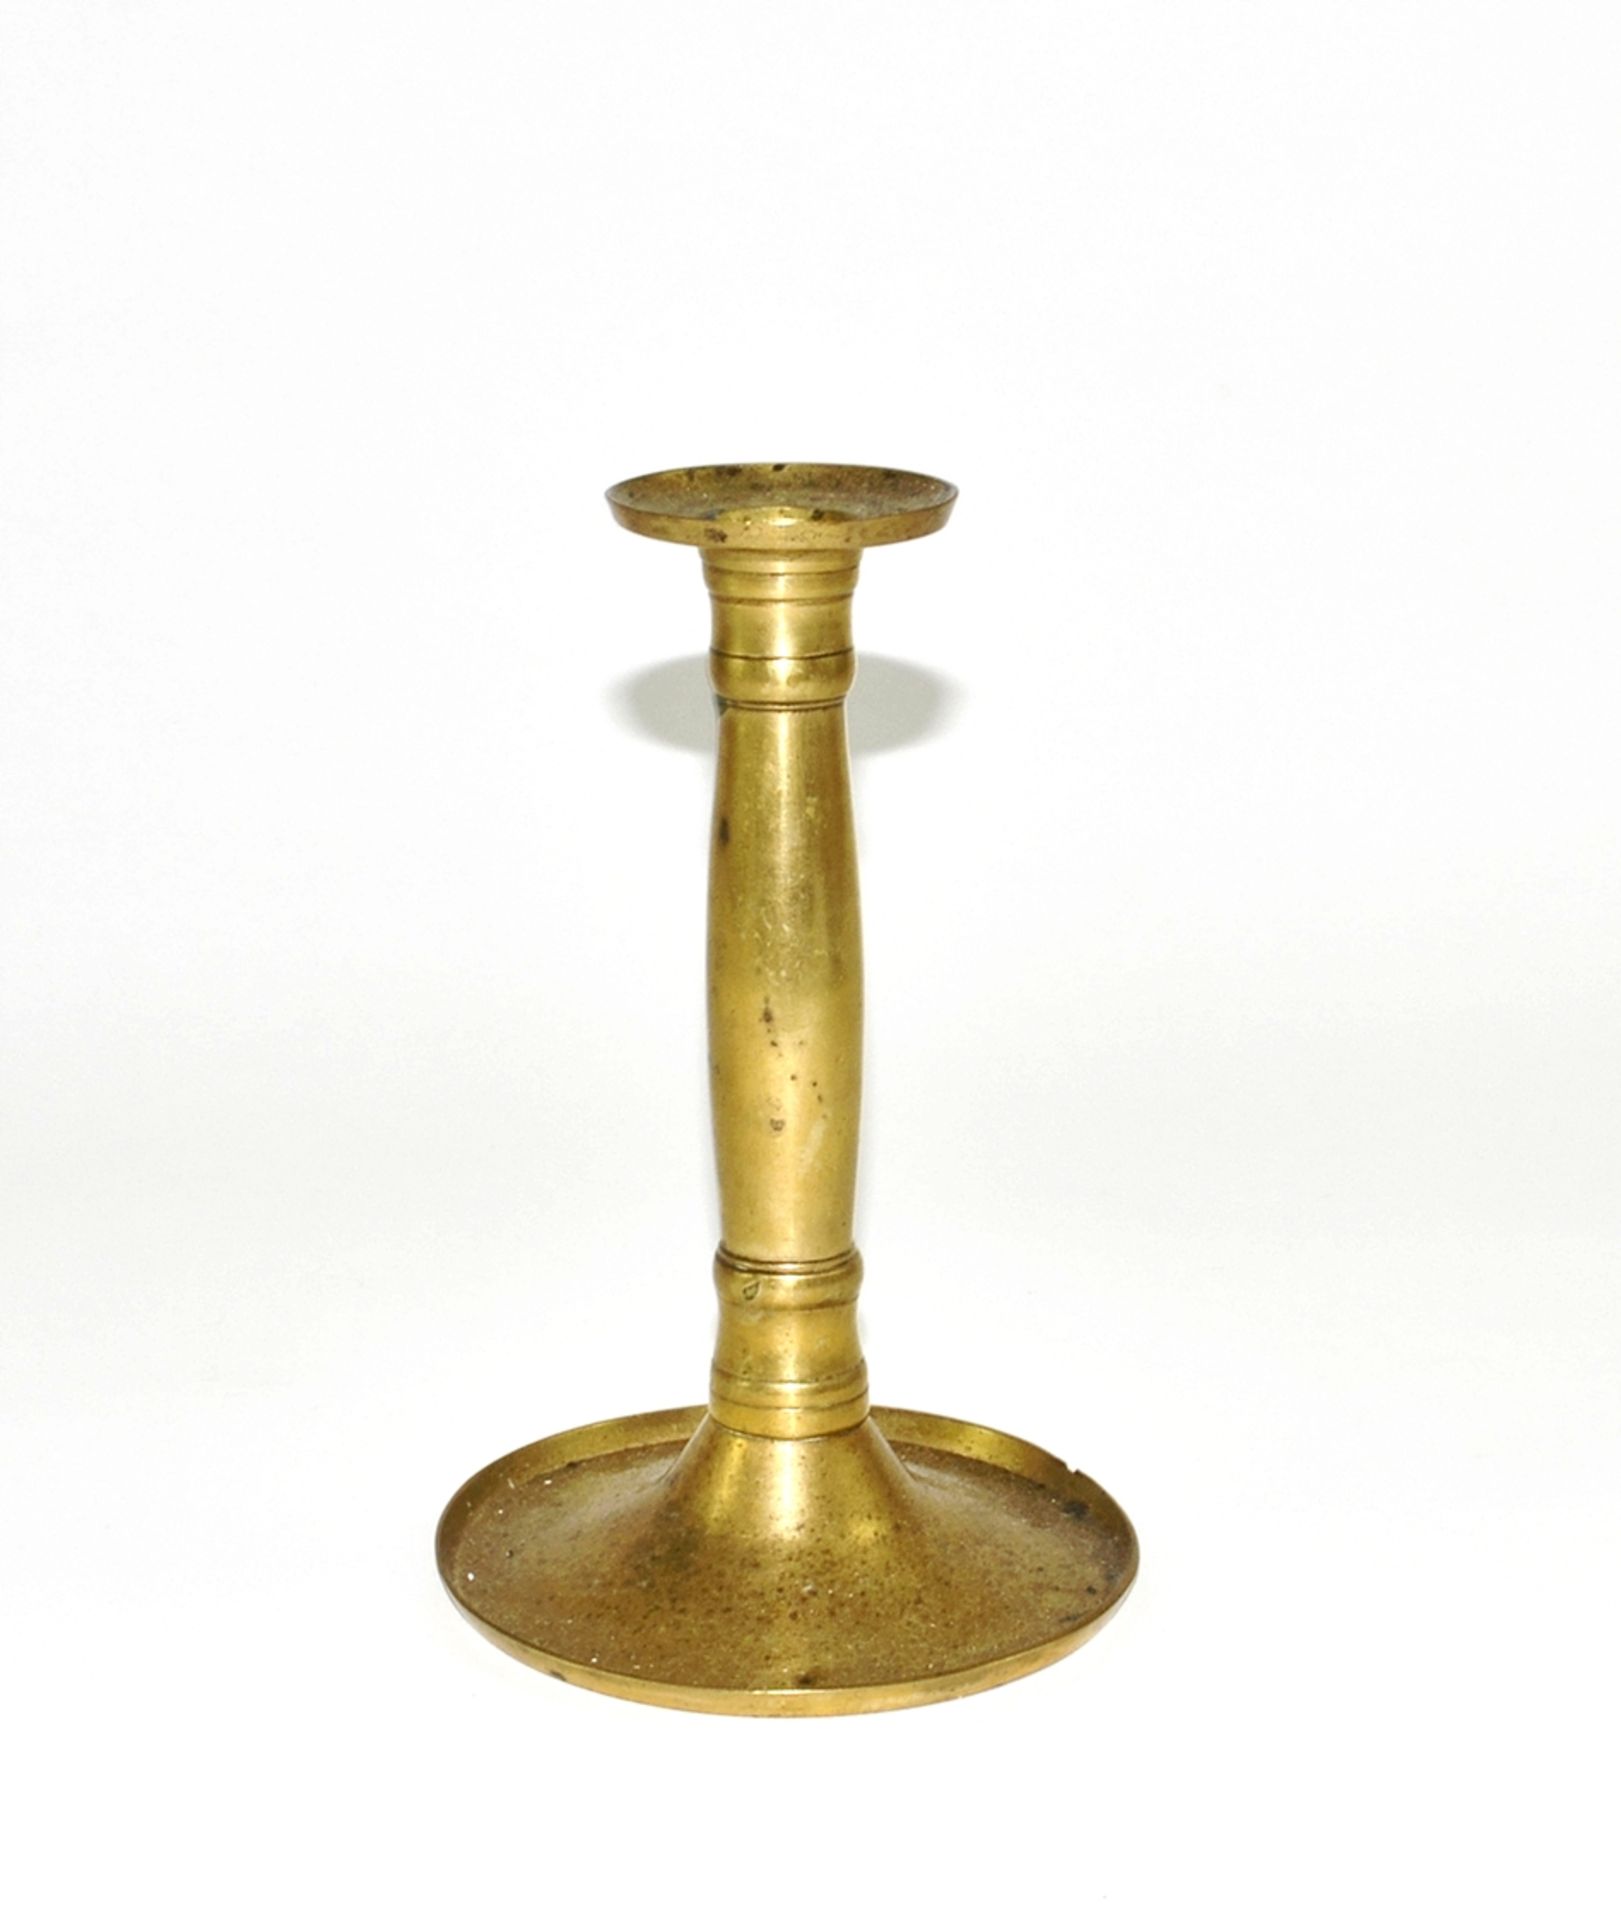 Biedermeier-Kerzenleuchter. Messing. Um 1820. H 17 cm